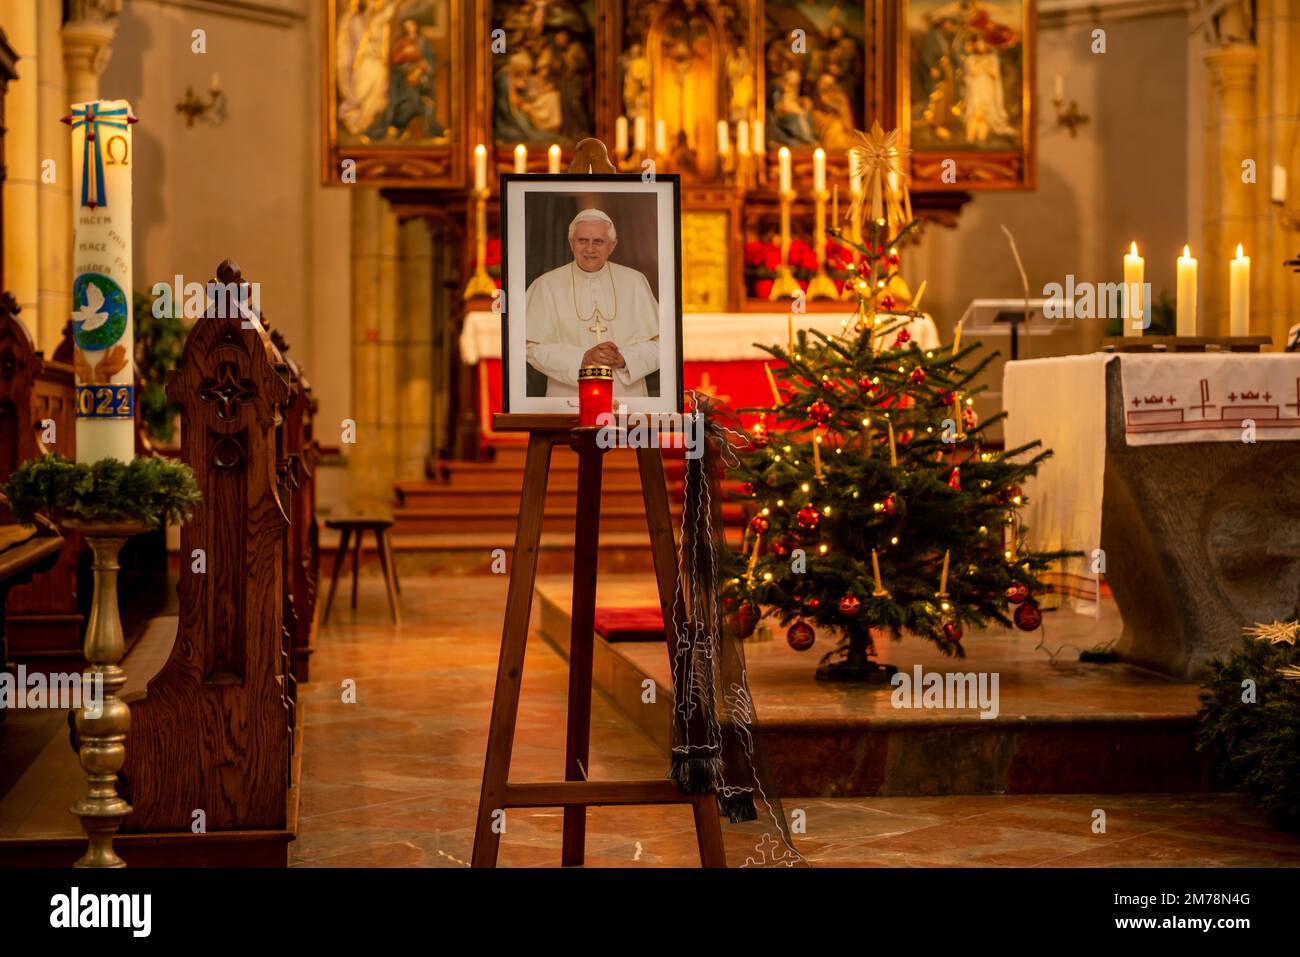 Portratl des verstorbenen Papstes Emeritus Benedikt XVI. In einer Kirche mit einem weihnachtsbaum und dem Altar im Hintergrund Stockfoto